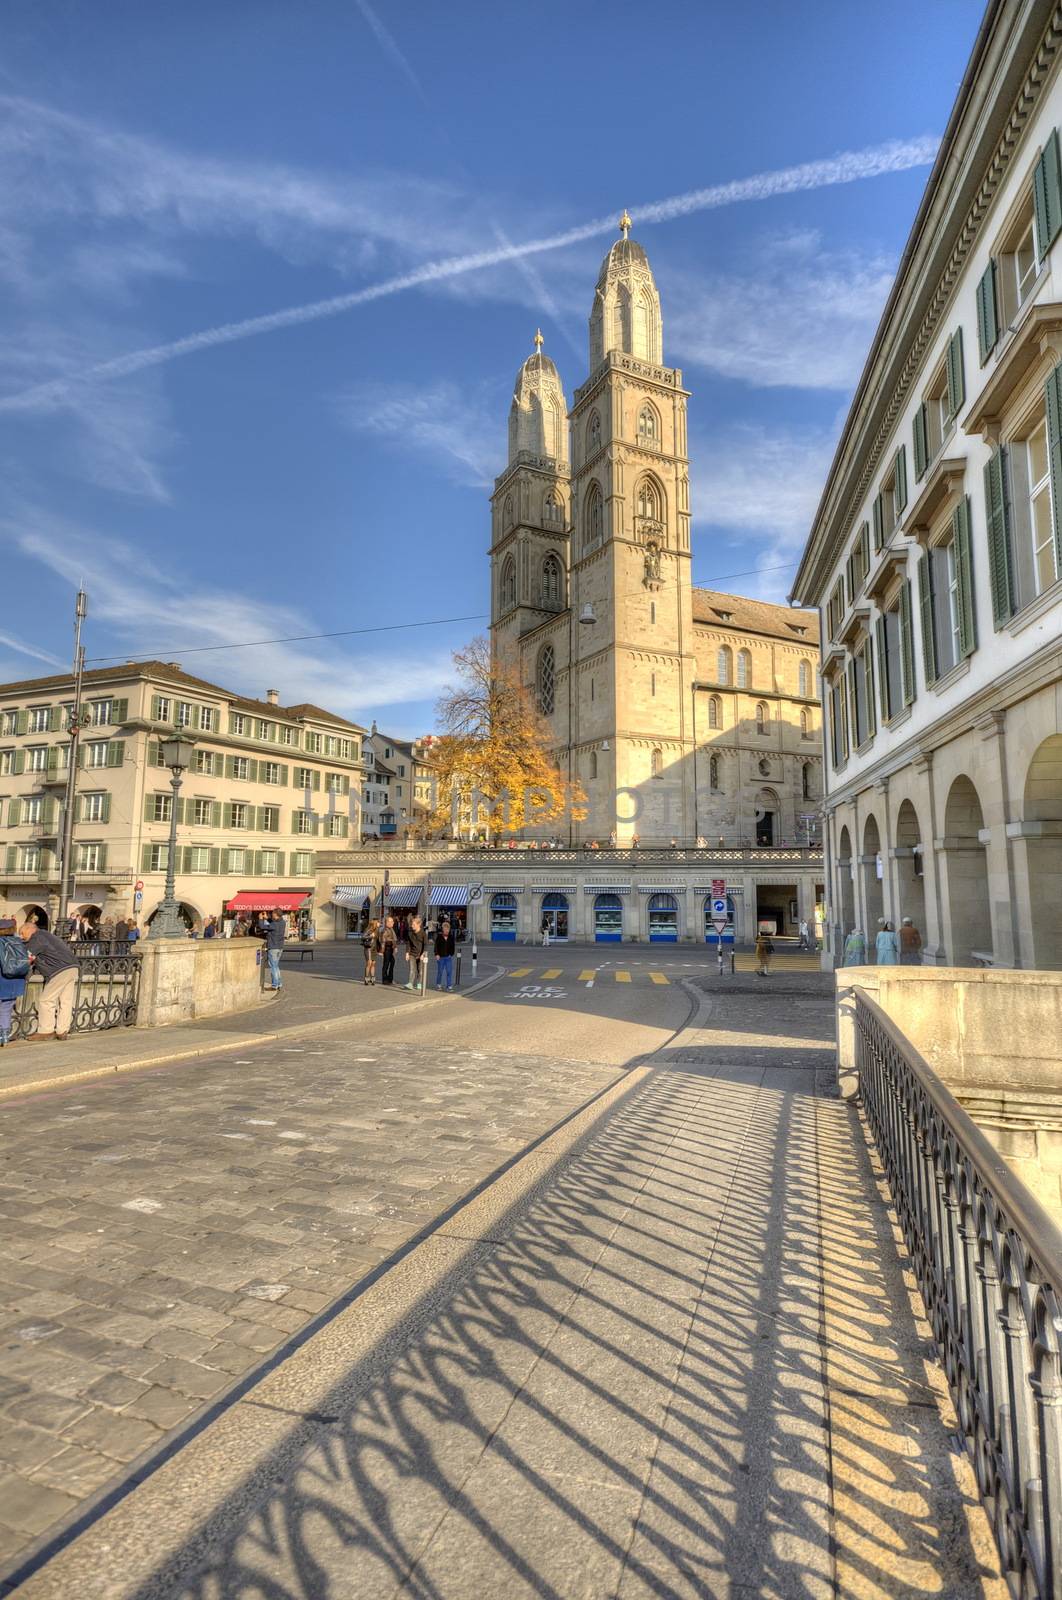 Cathedral of Zurich, Switzerland